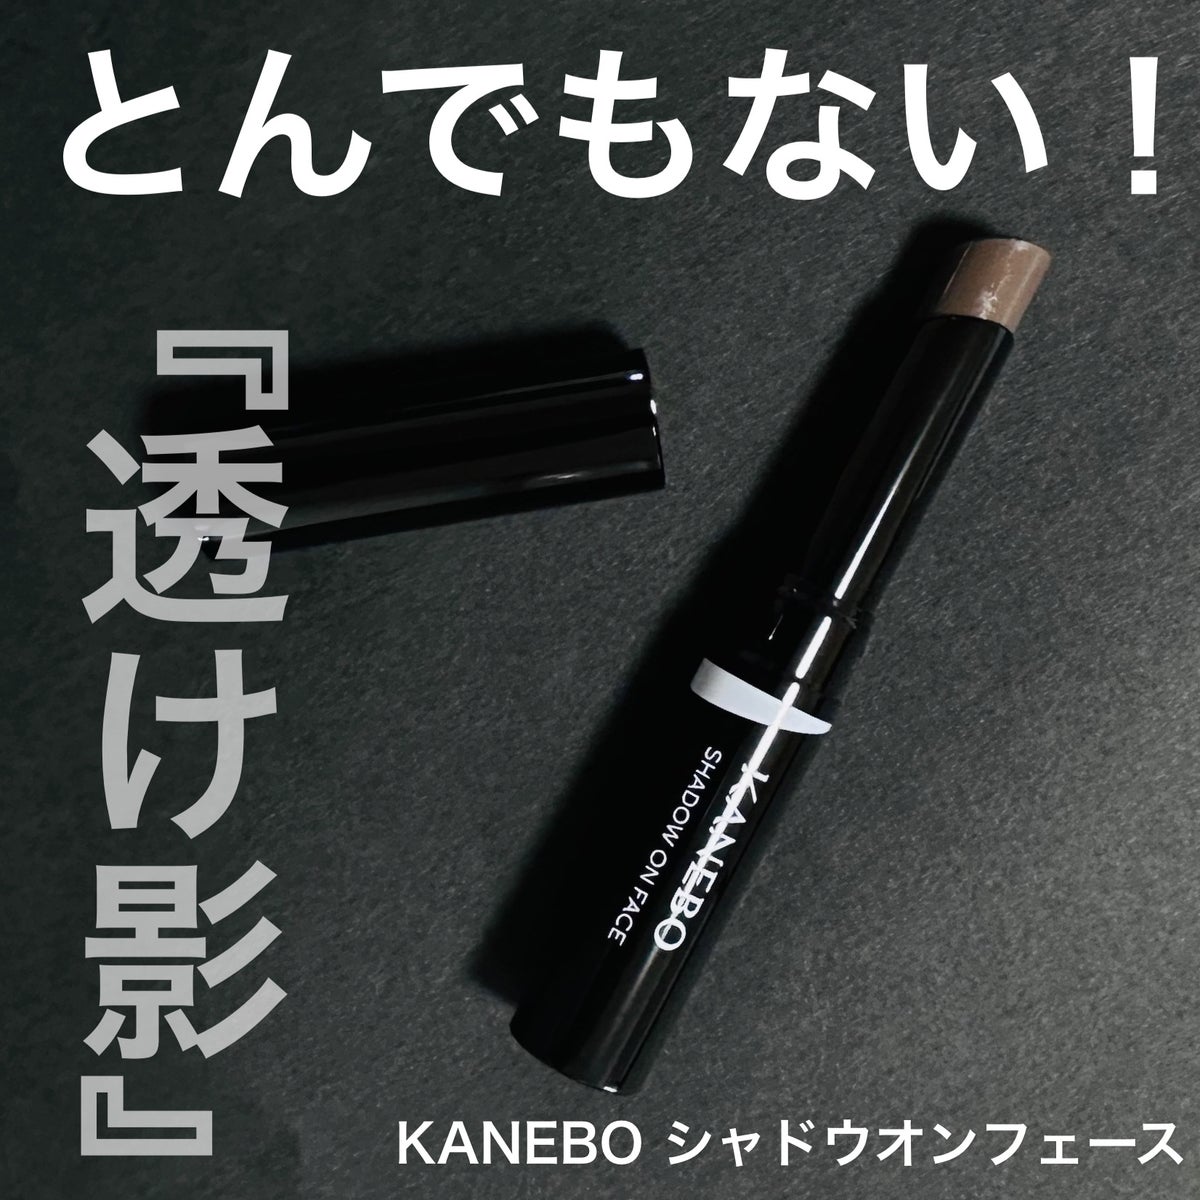 KANEBO シャドウオンフェース - フェイスカラー